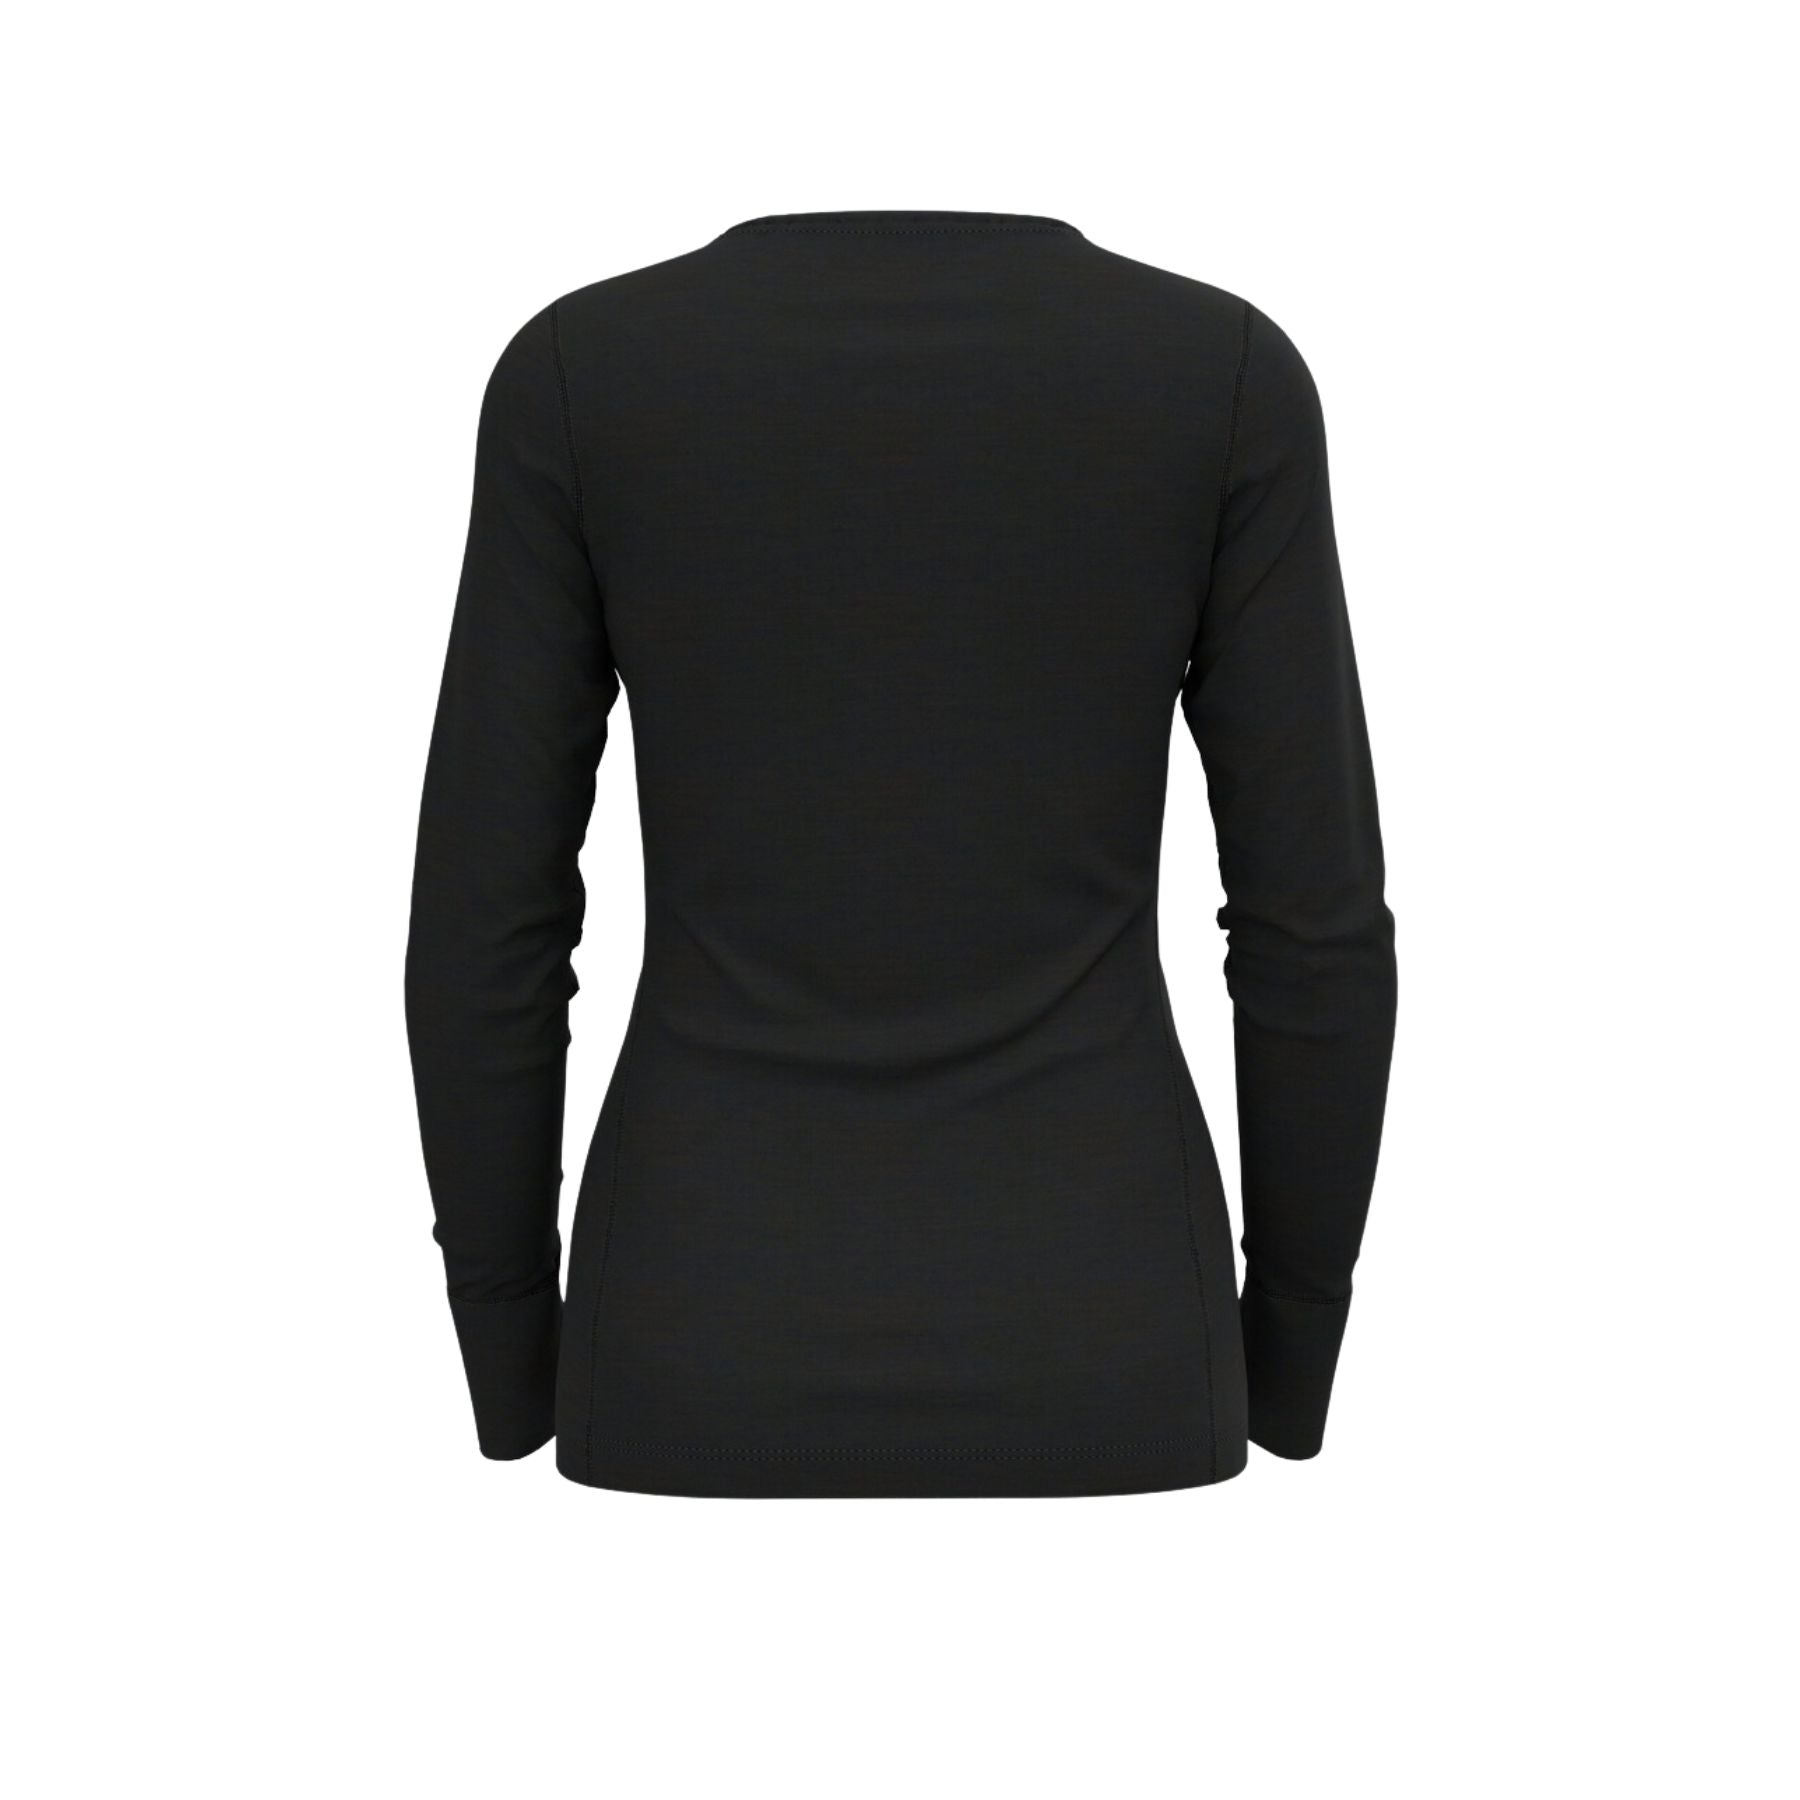 Odlo Women's Natural Merino 200 Base Layer Top in Black